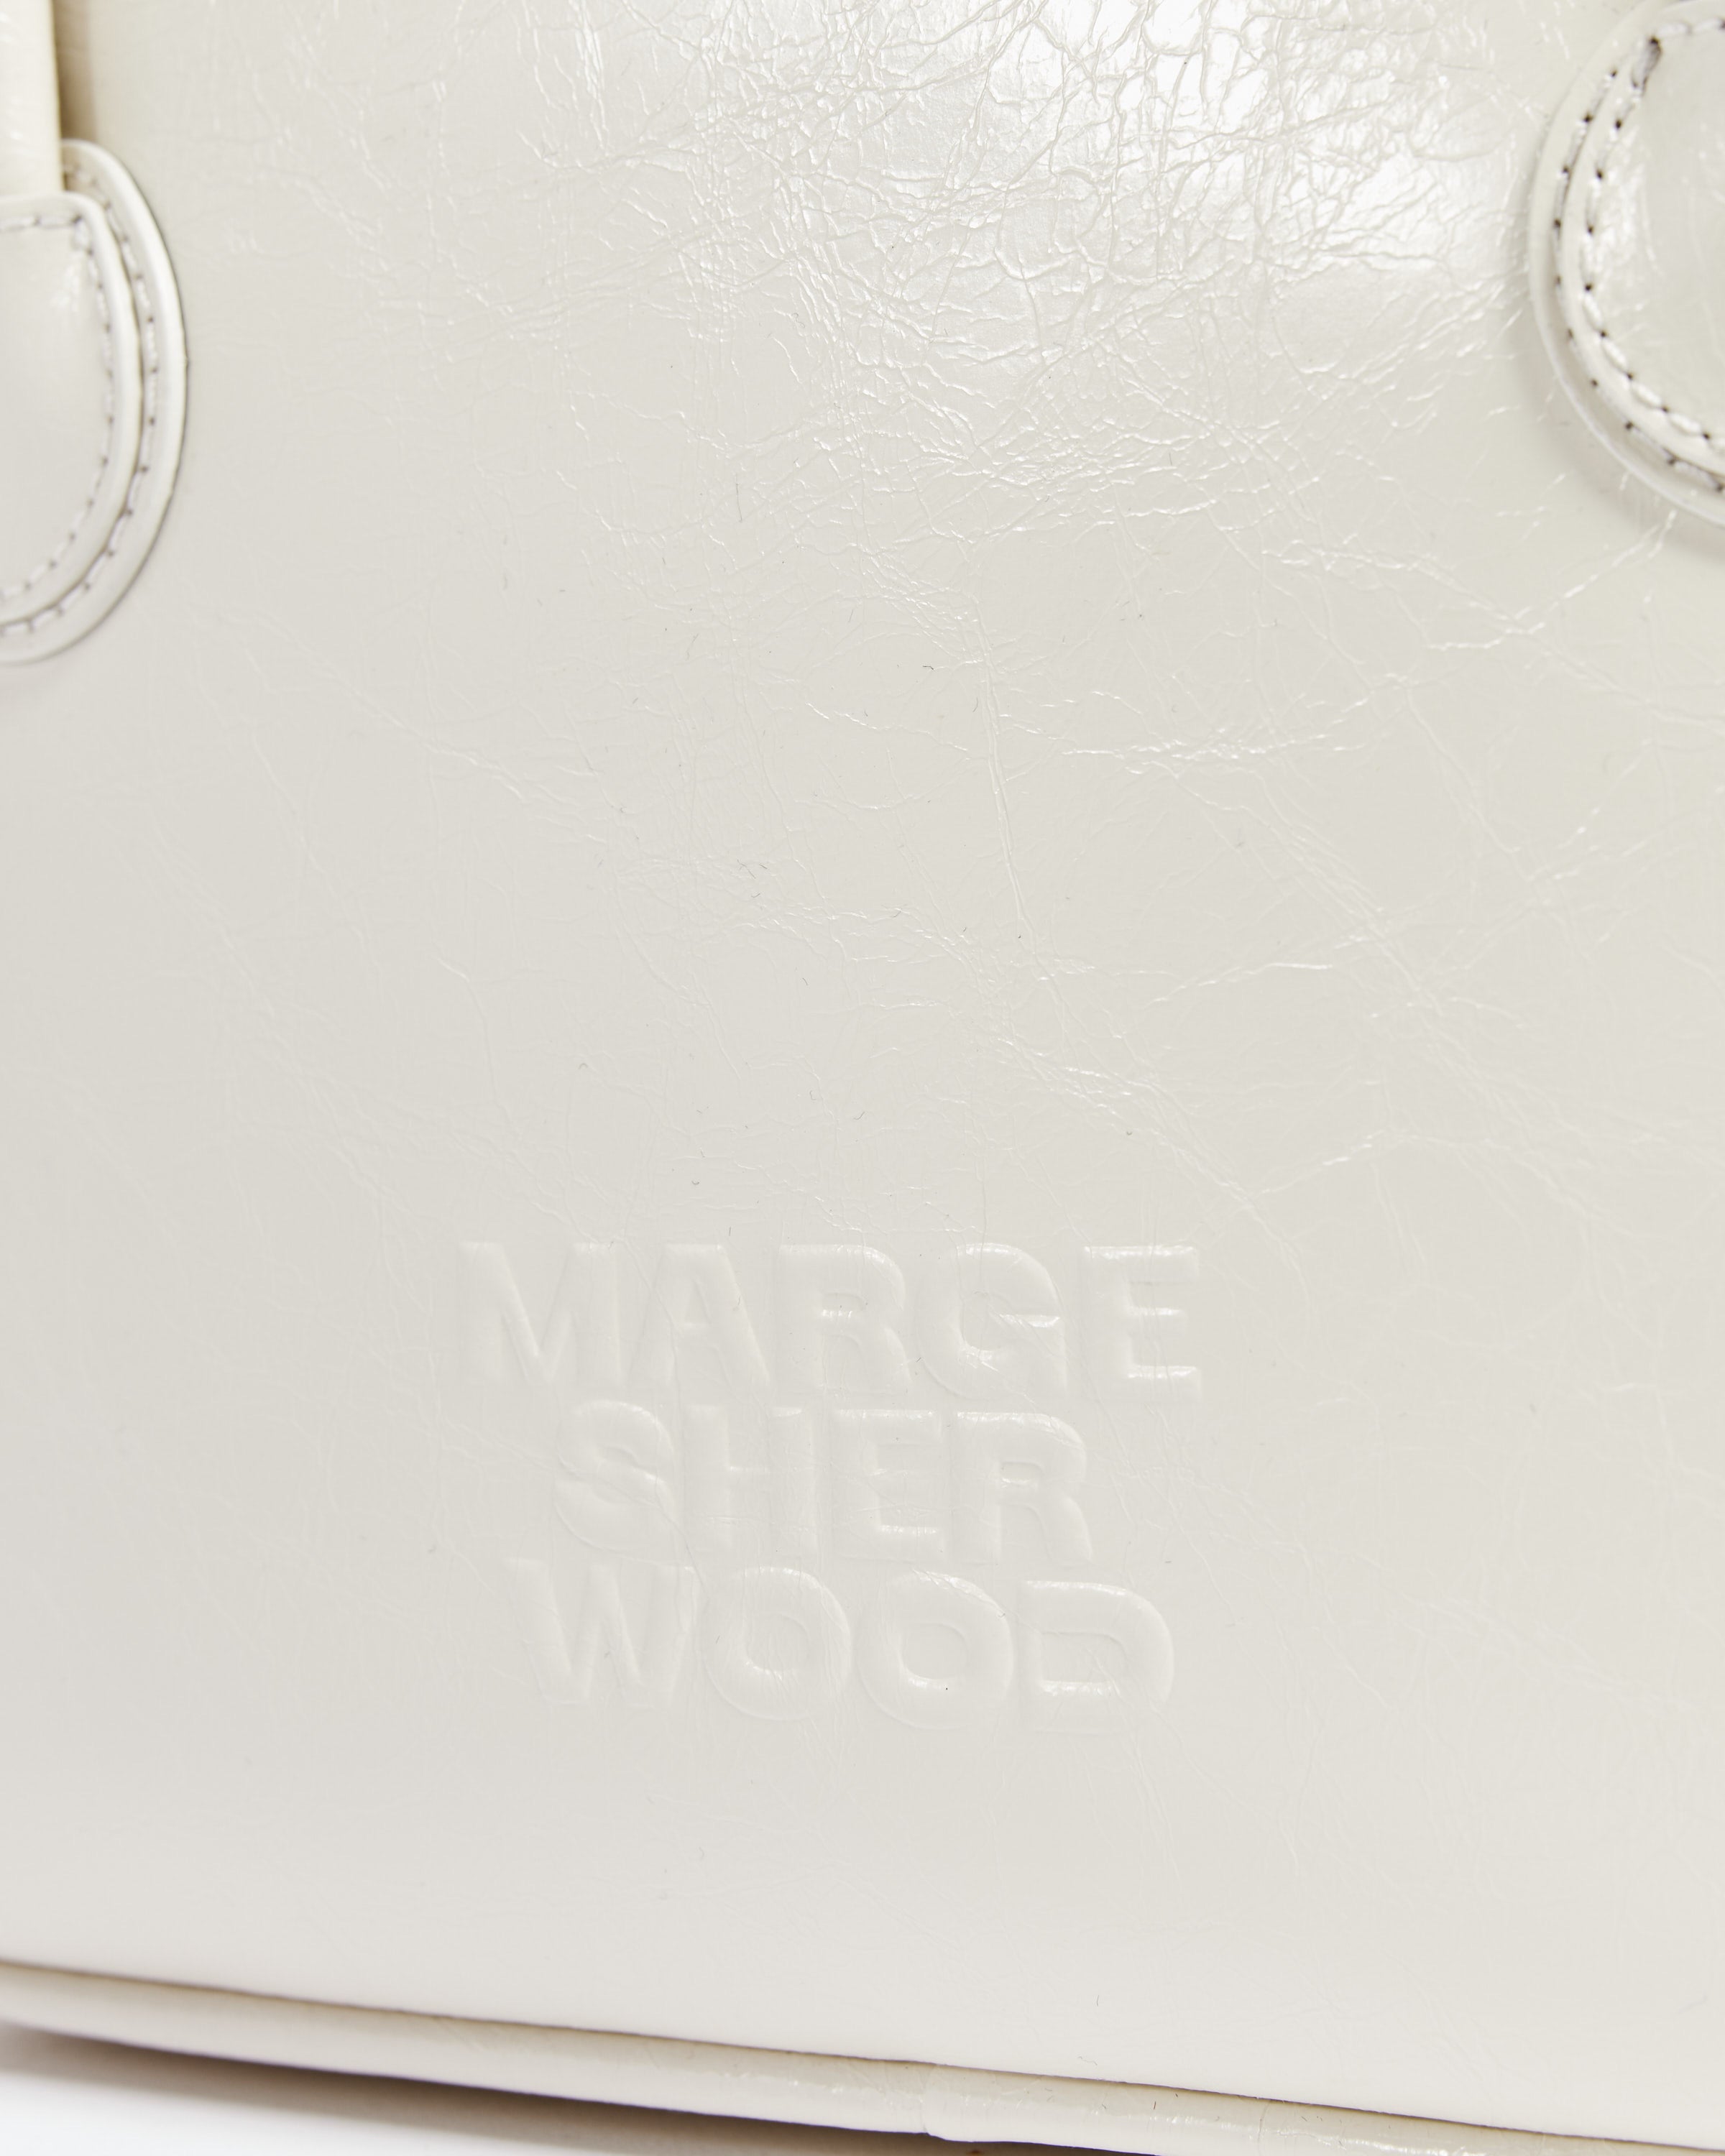 Marge Sherwood Silver Bessette Bag